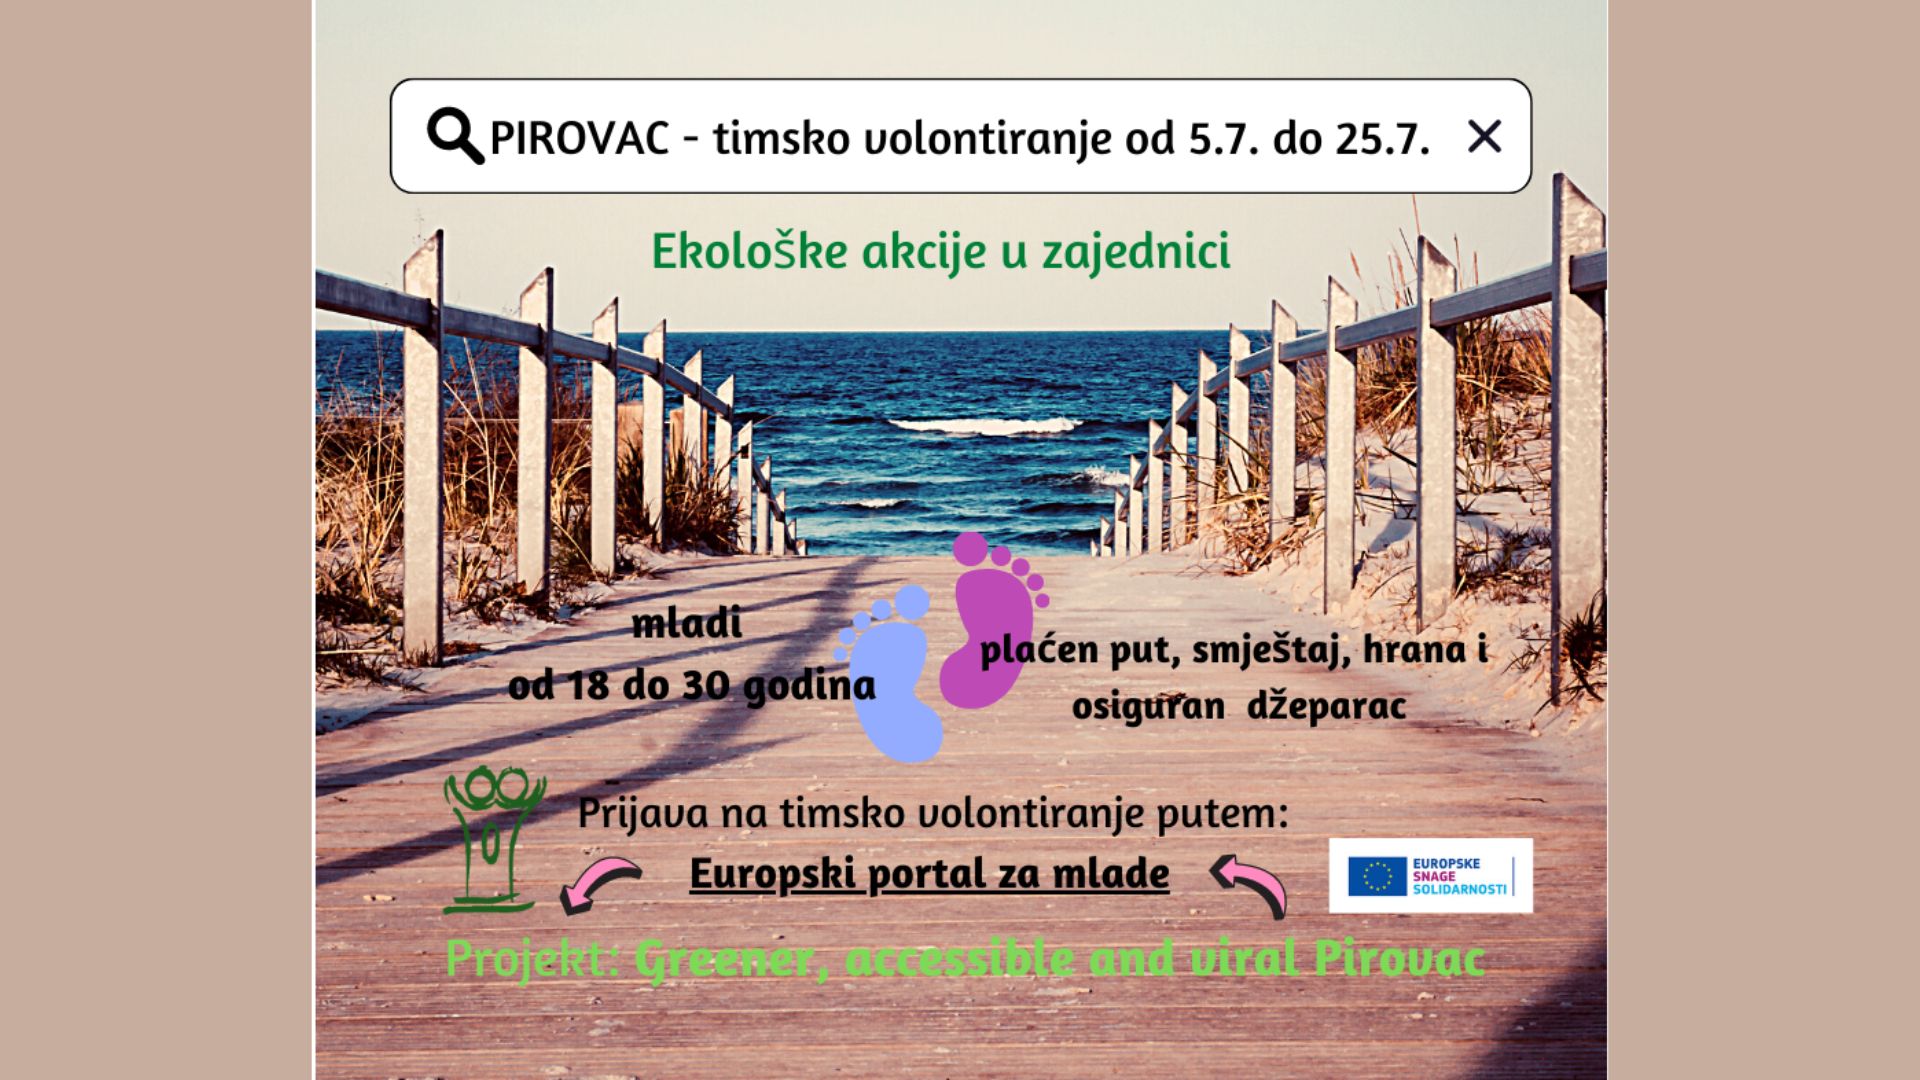 Poziv na timsko volontiranje u Pirovcu